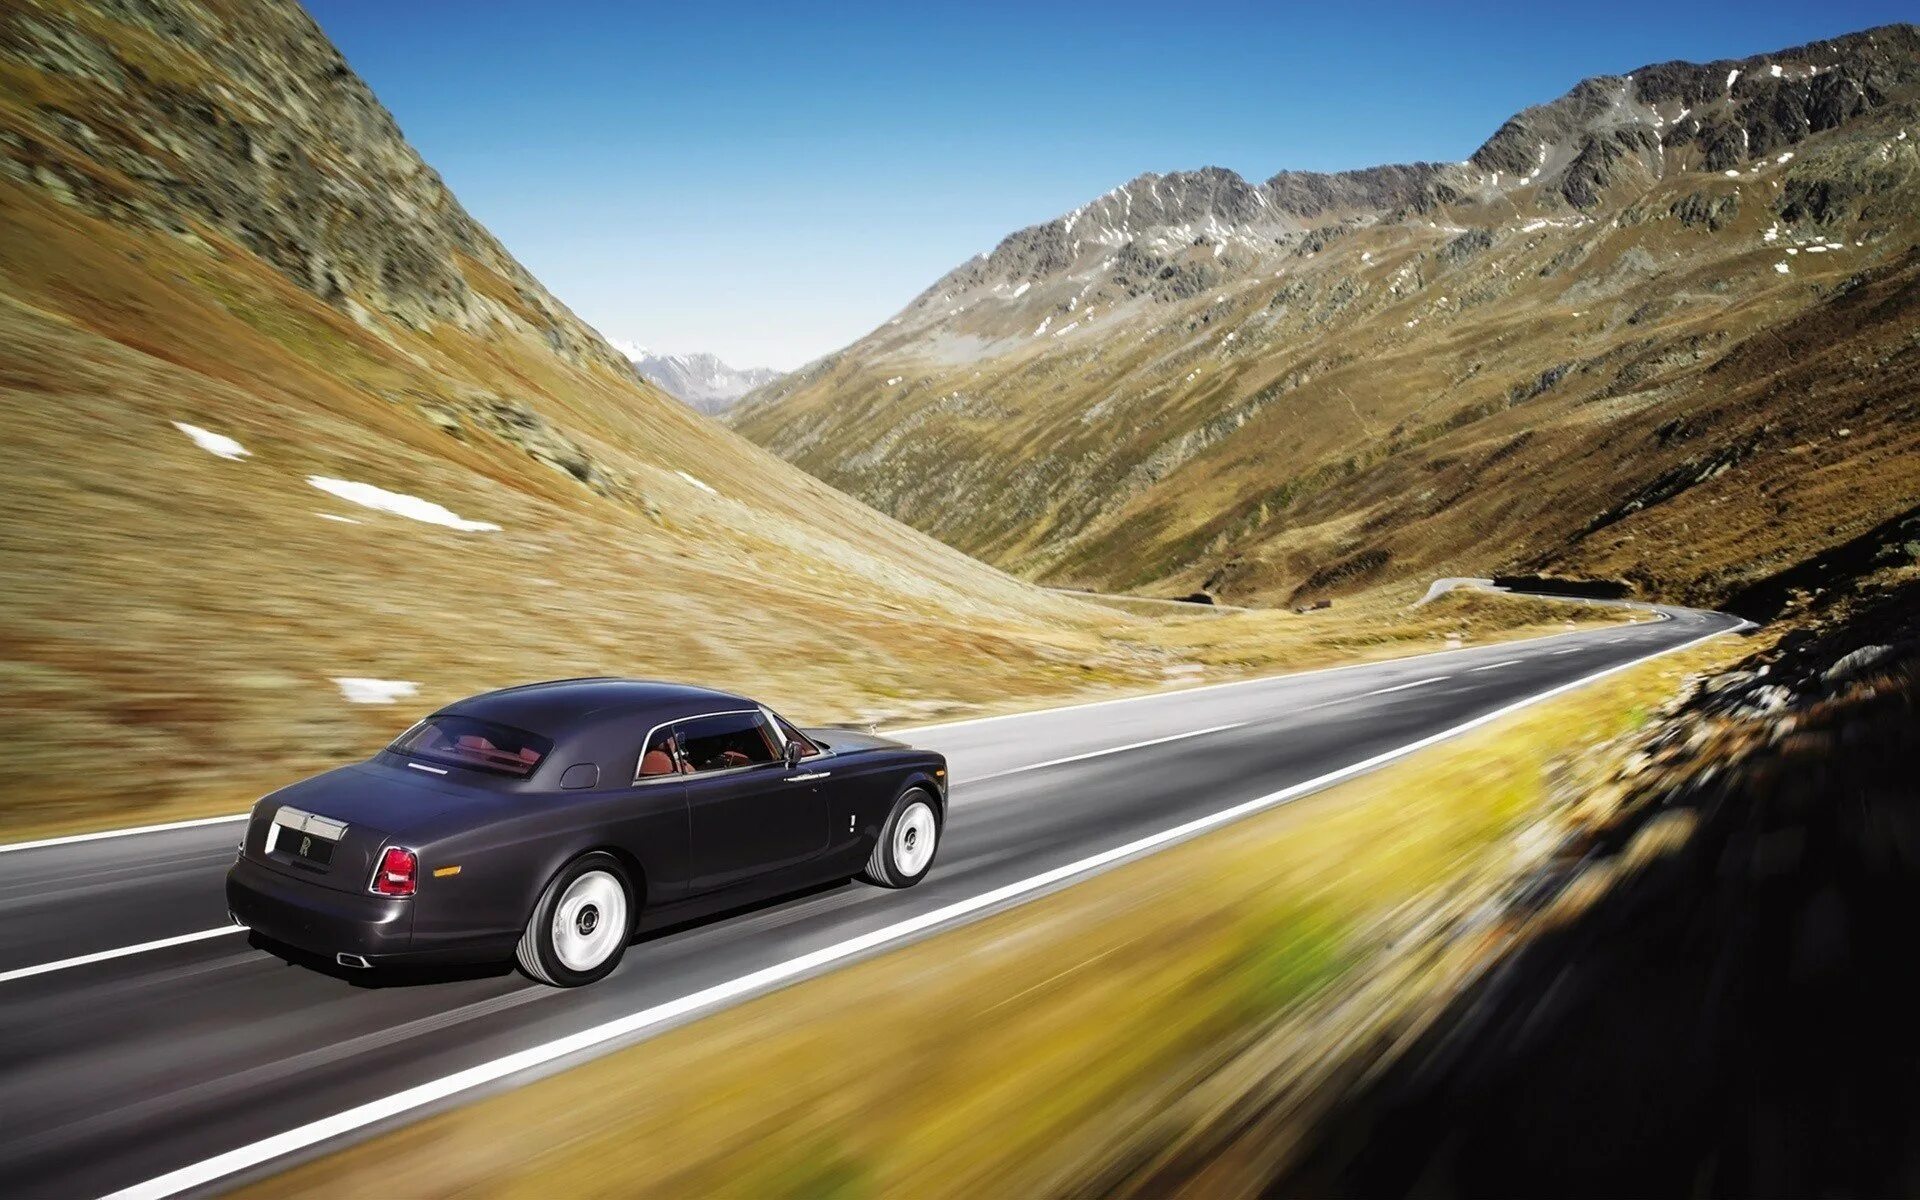 Почему автомобиль едет. Rolls Royce Phantom 2008. Автомобиль в горах. Автомобиль на фоне гор. Машина едет по дороге.